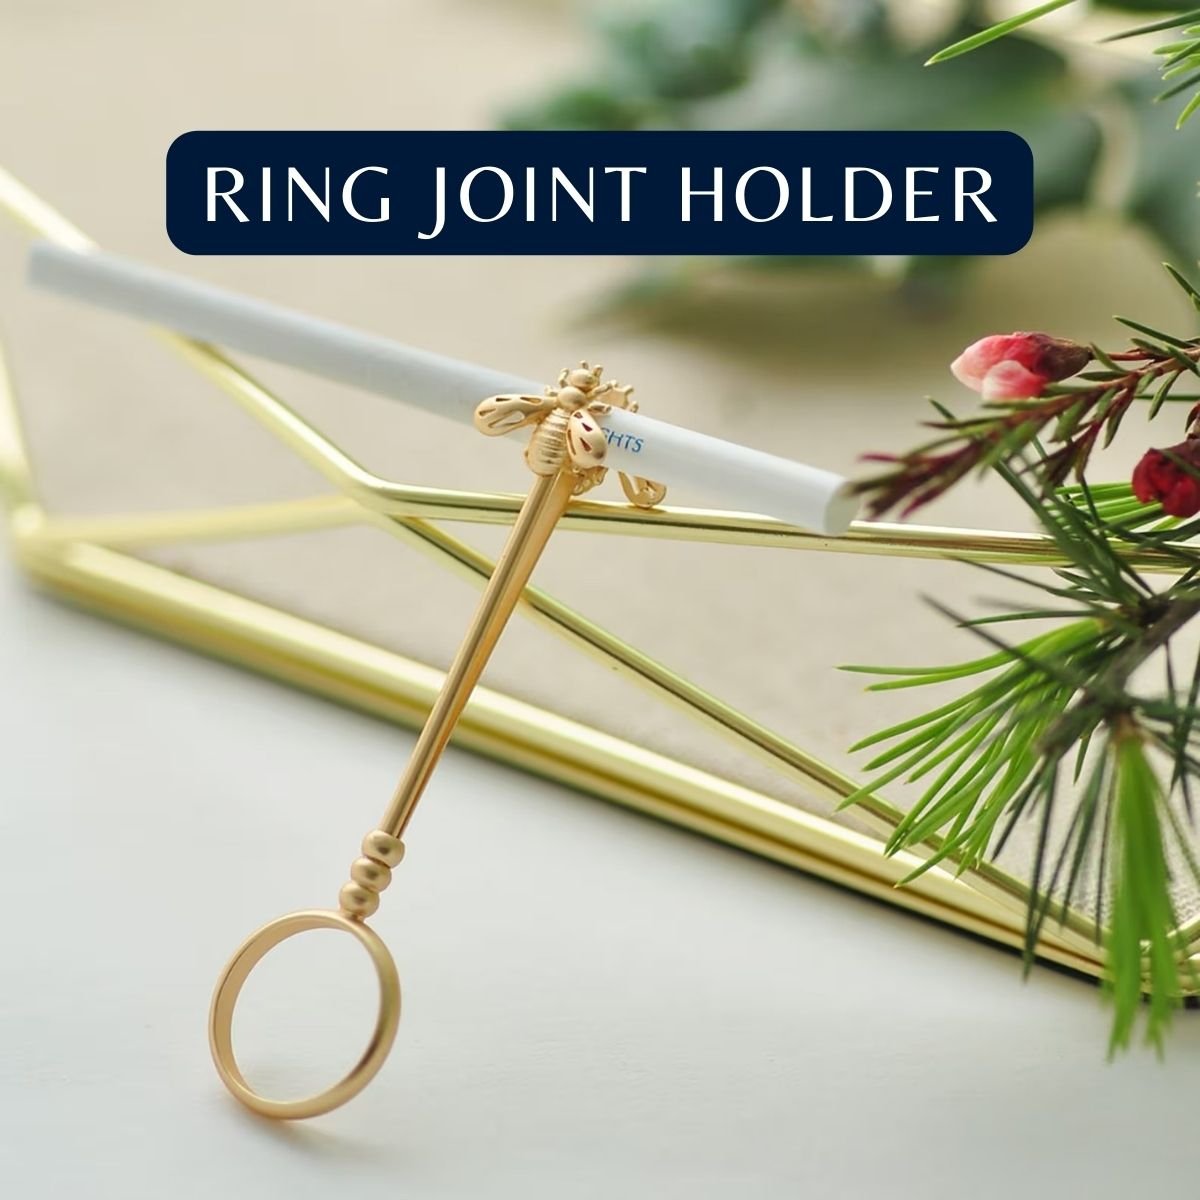 5. Ring Joint Holder